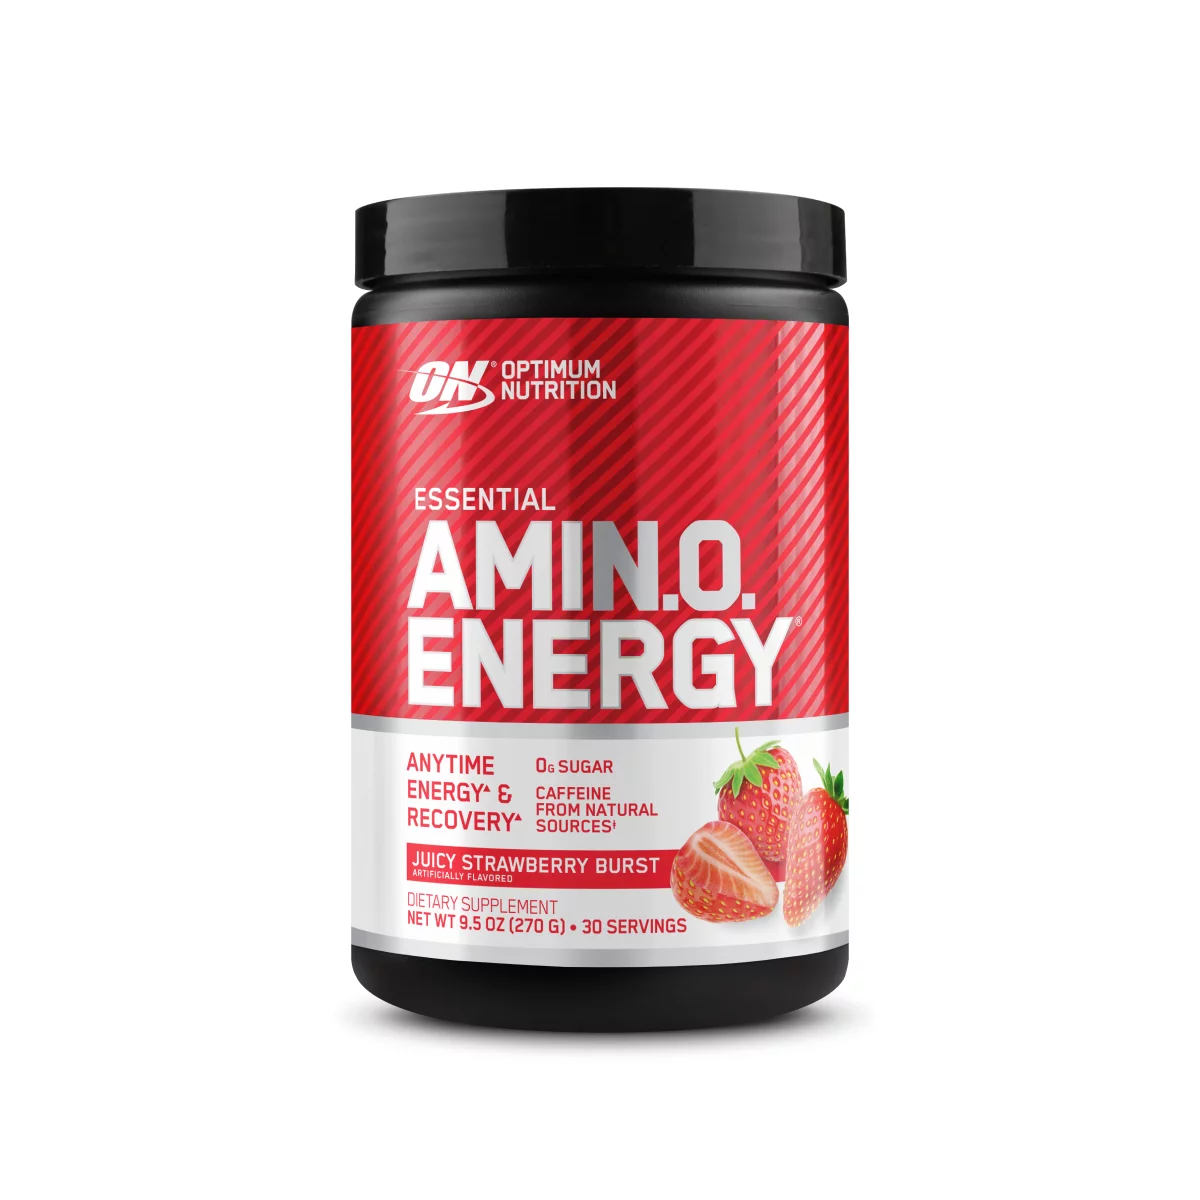 Essential Amino Energy -Optimum Nutrition